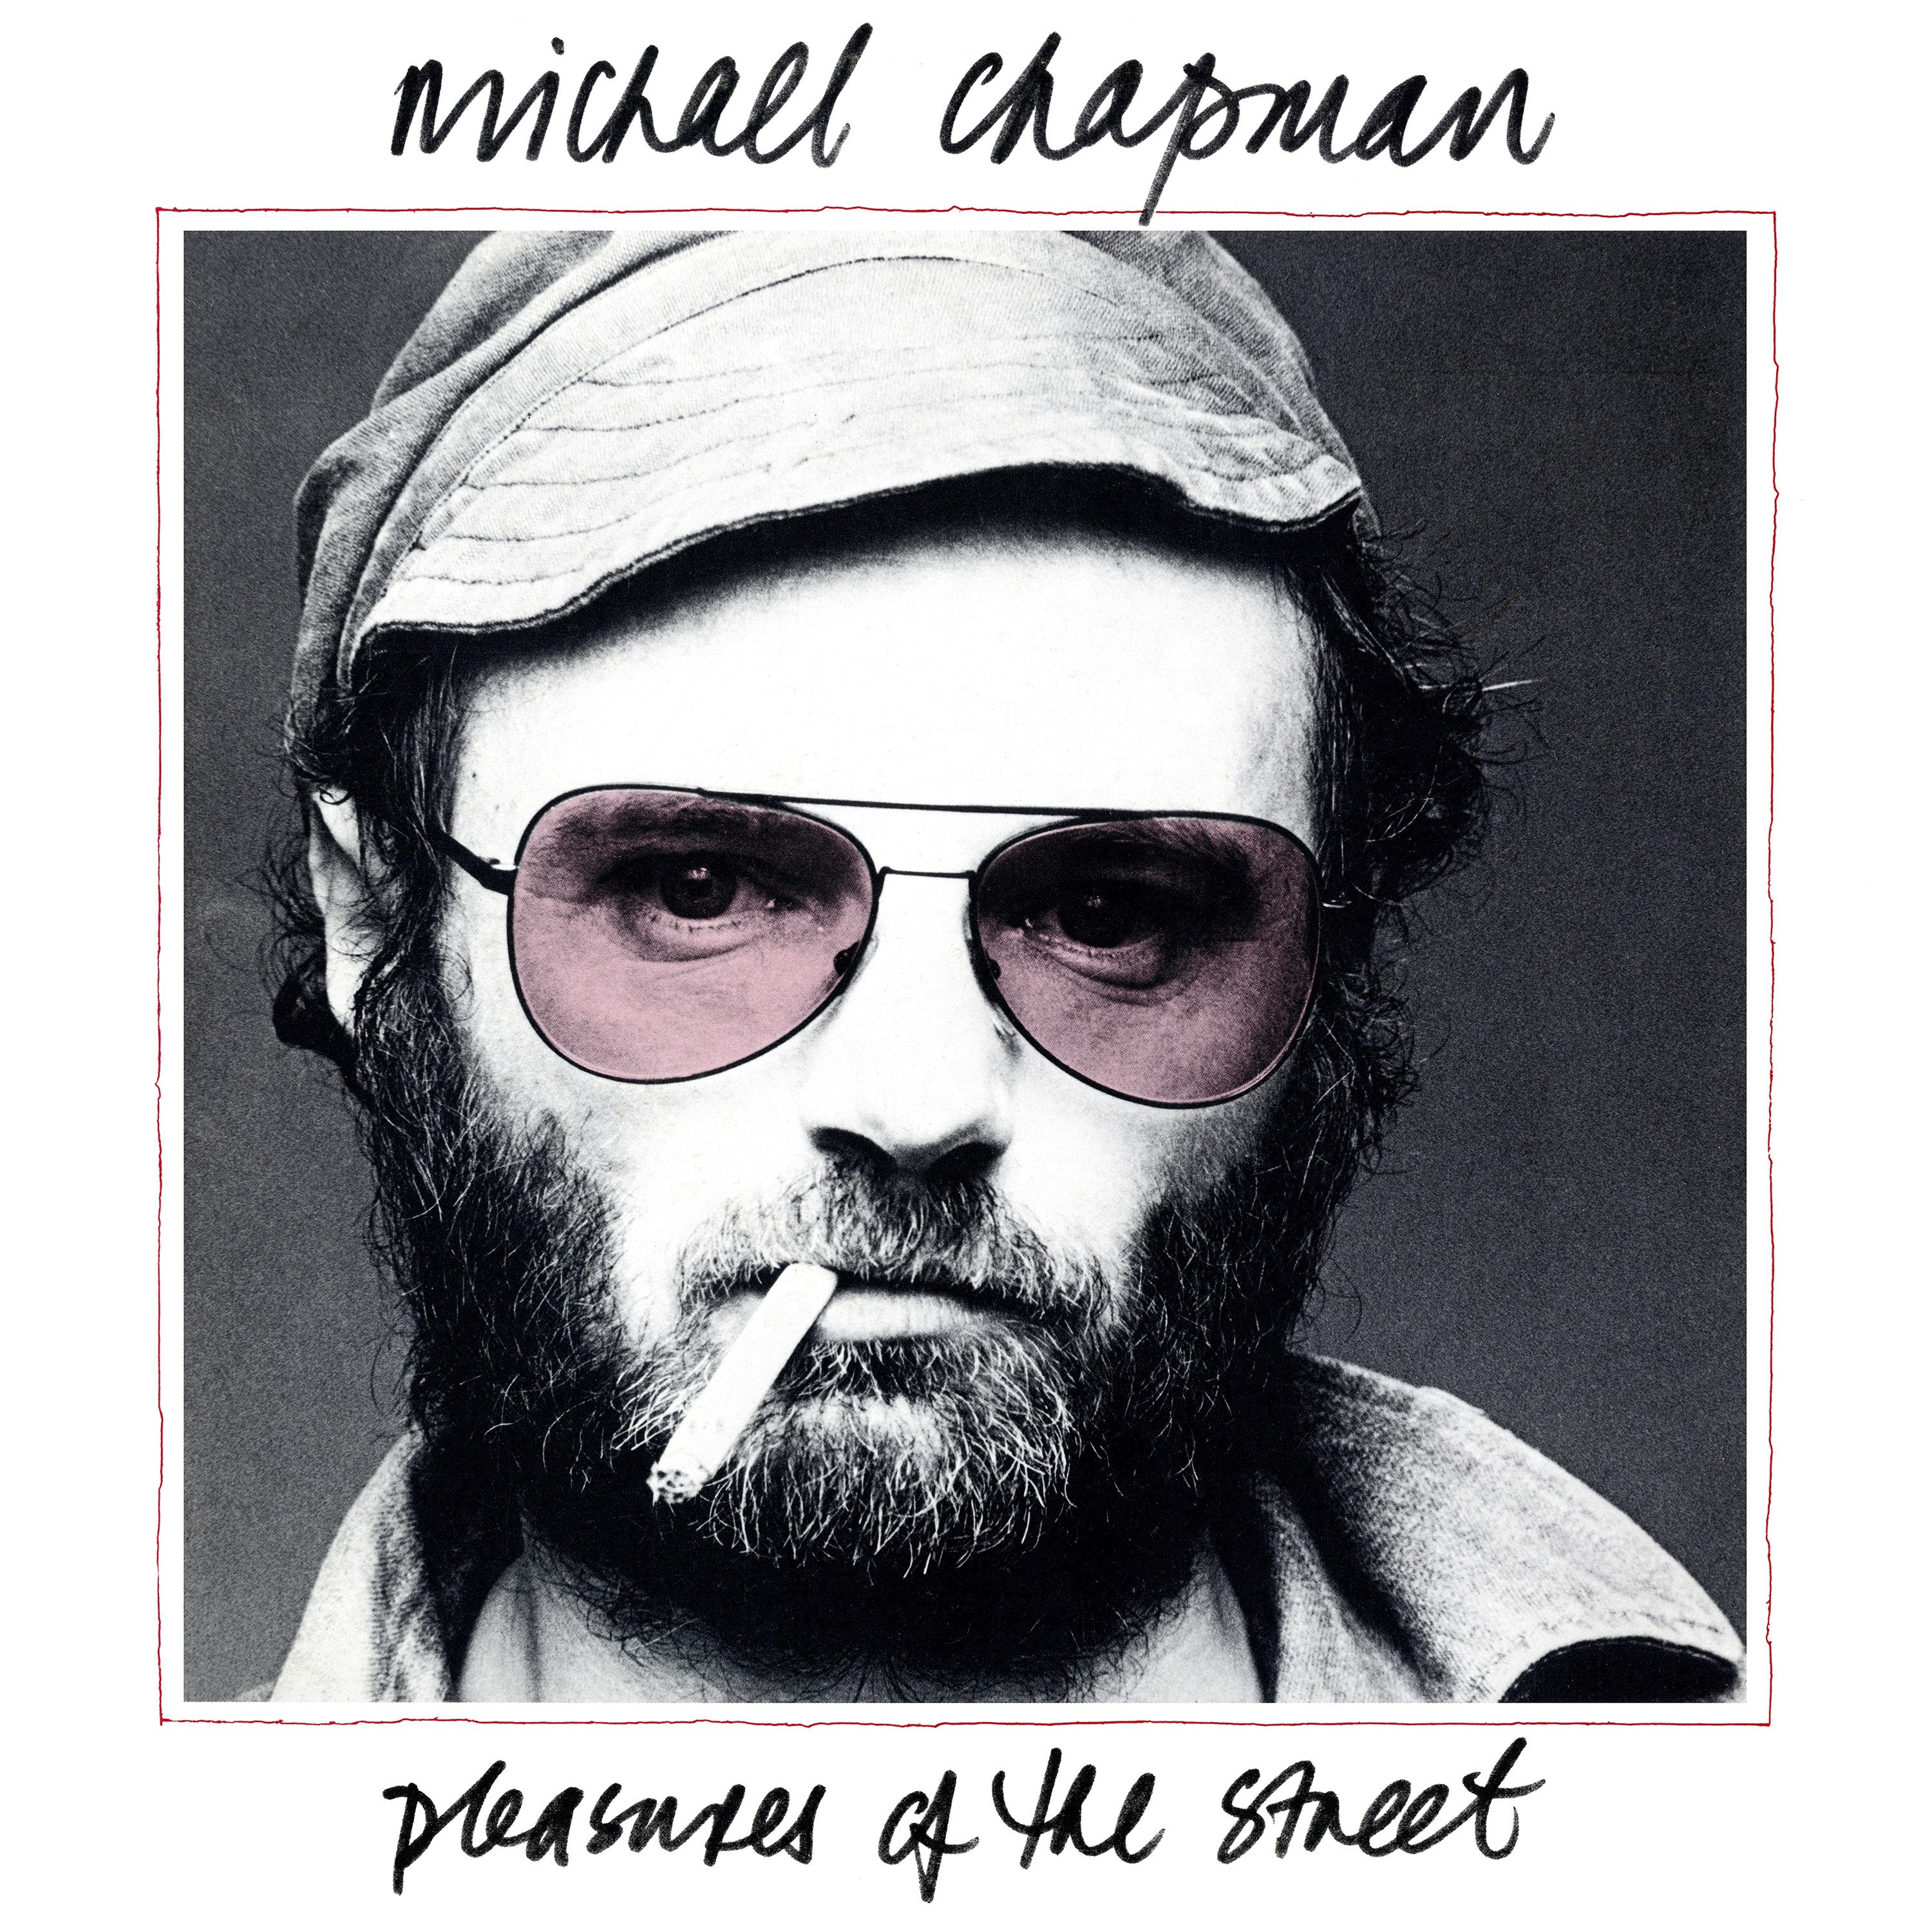 Michael Chapman Pleasures Of The Street - CD ALBUM